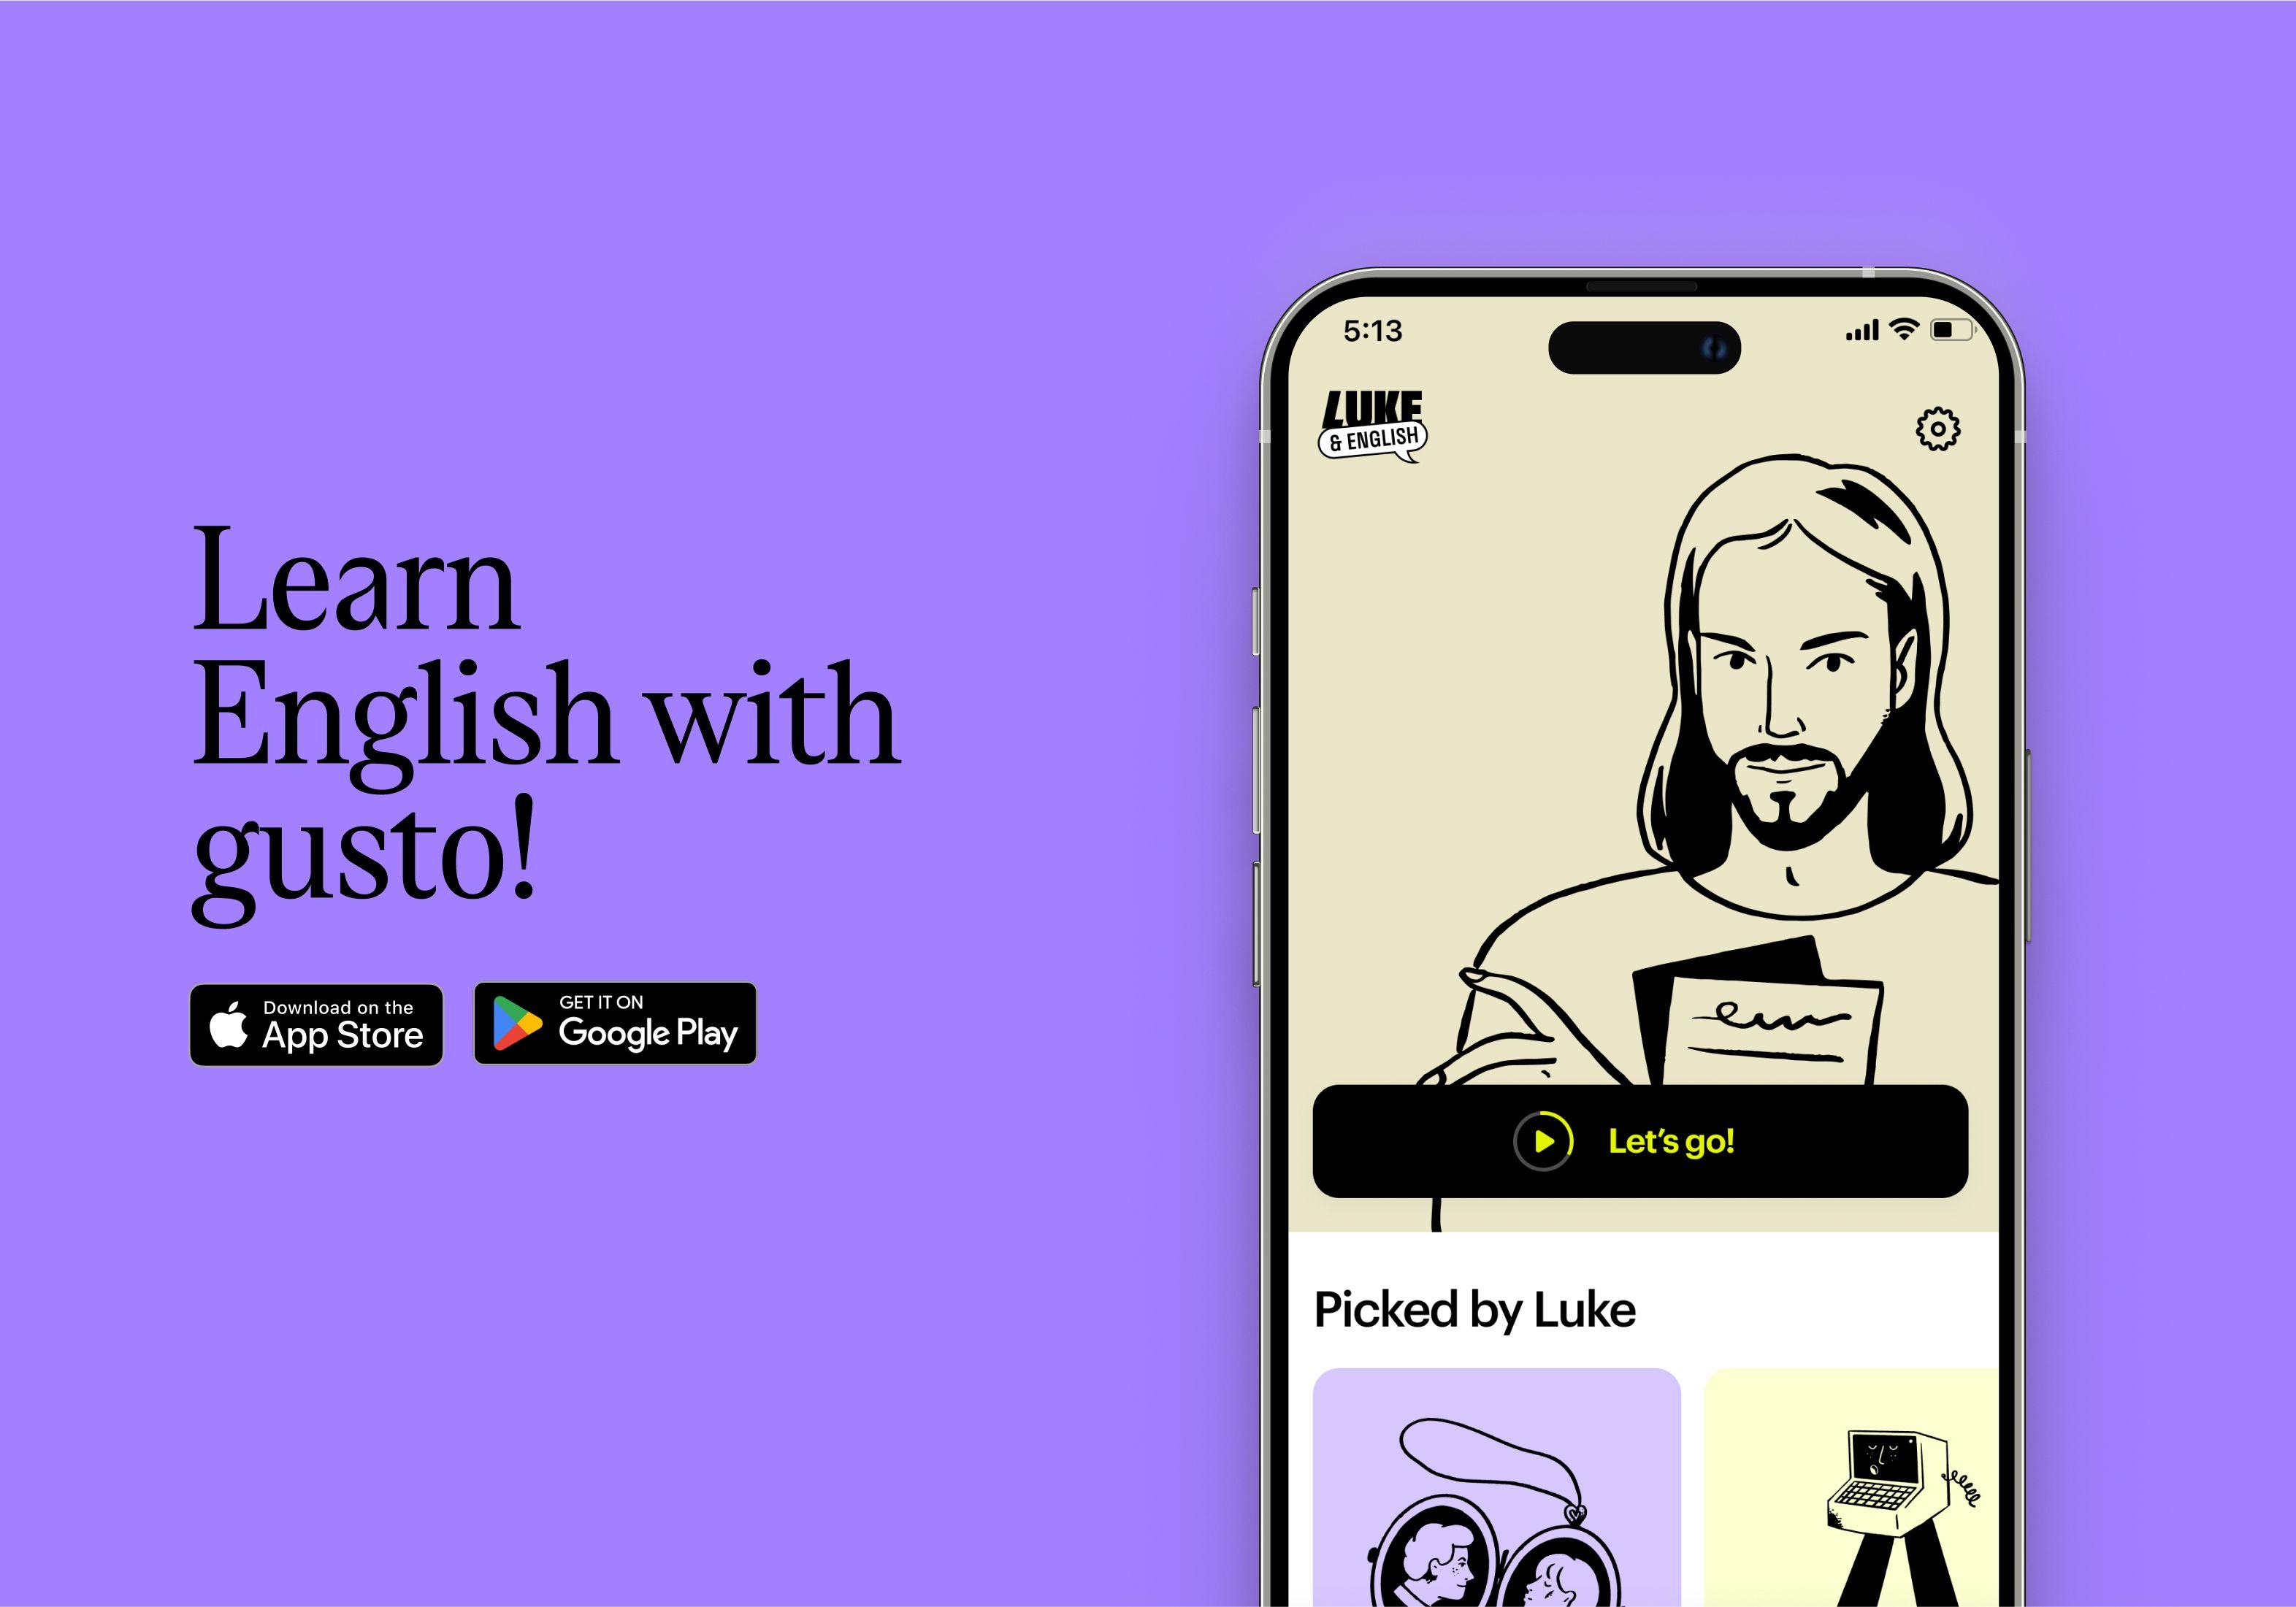 Learn English Flashcard App UI design